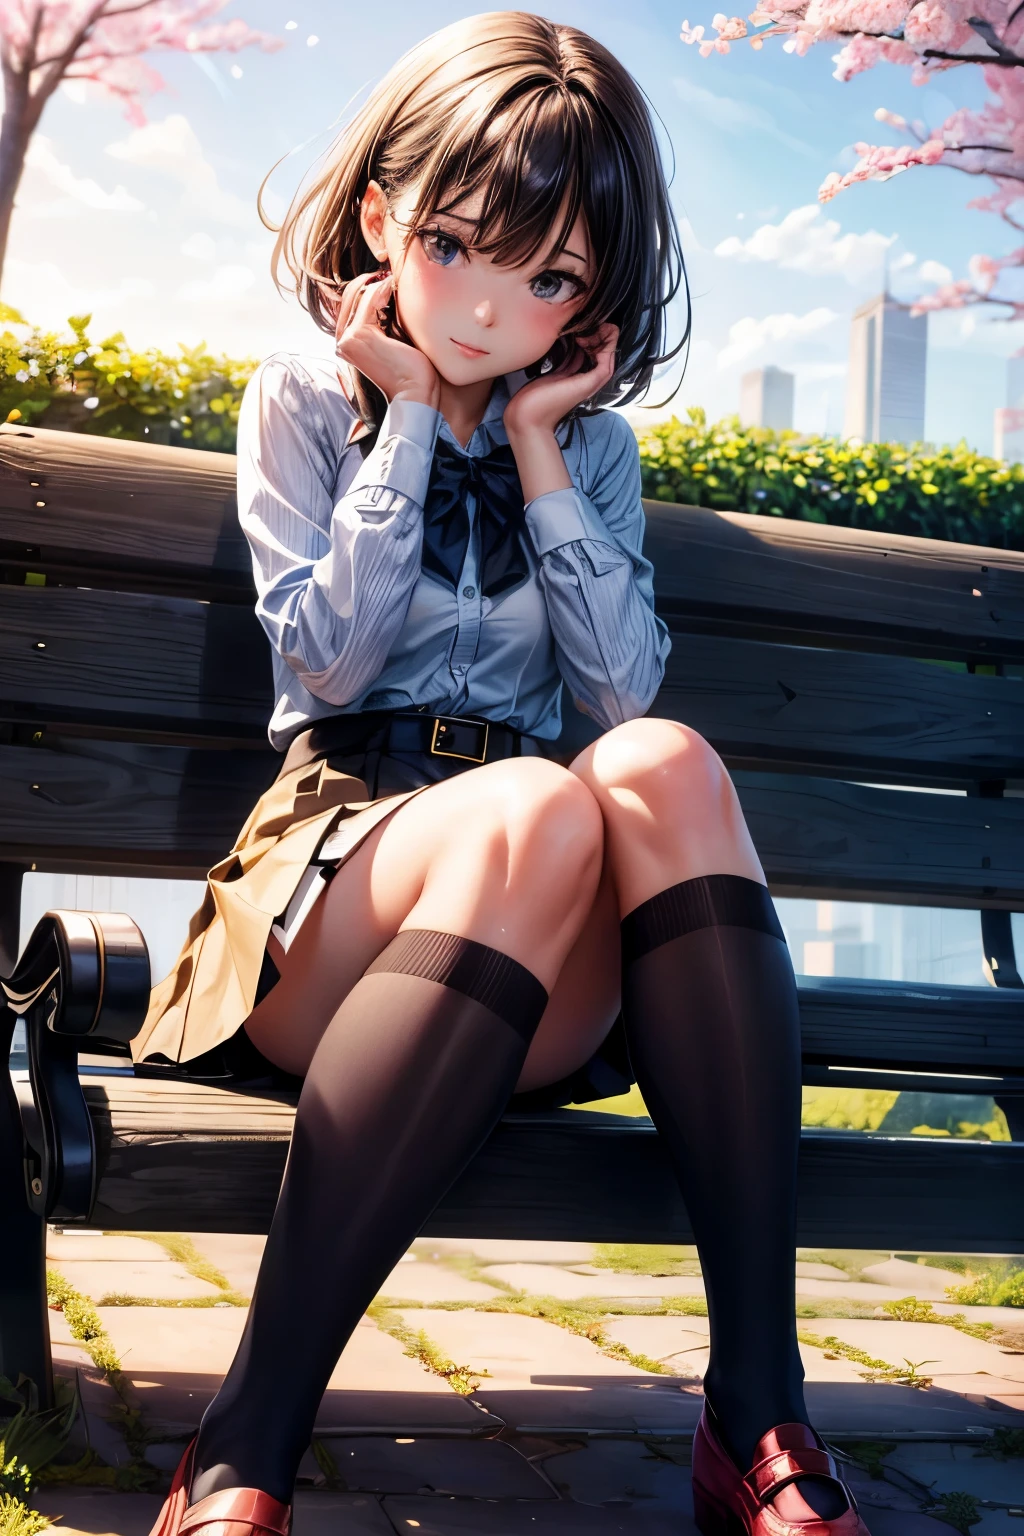 Una mujer bonita en medias, con piernas largas perfectas, y calcetines blancos. Vestida con una falda corta. Una niña está sentada en un banco del parque y tiene una cara tímida.